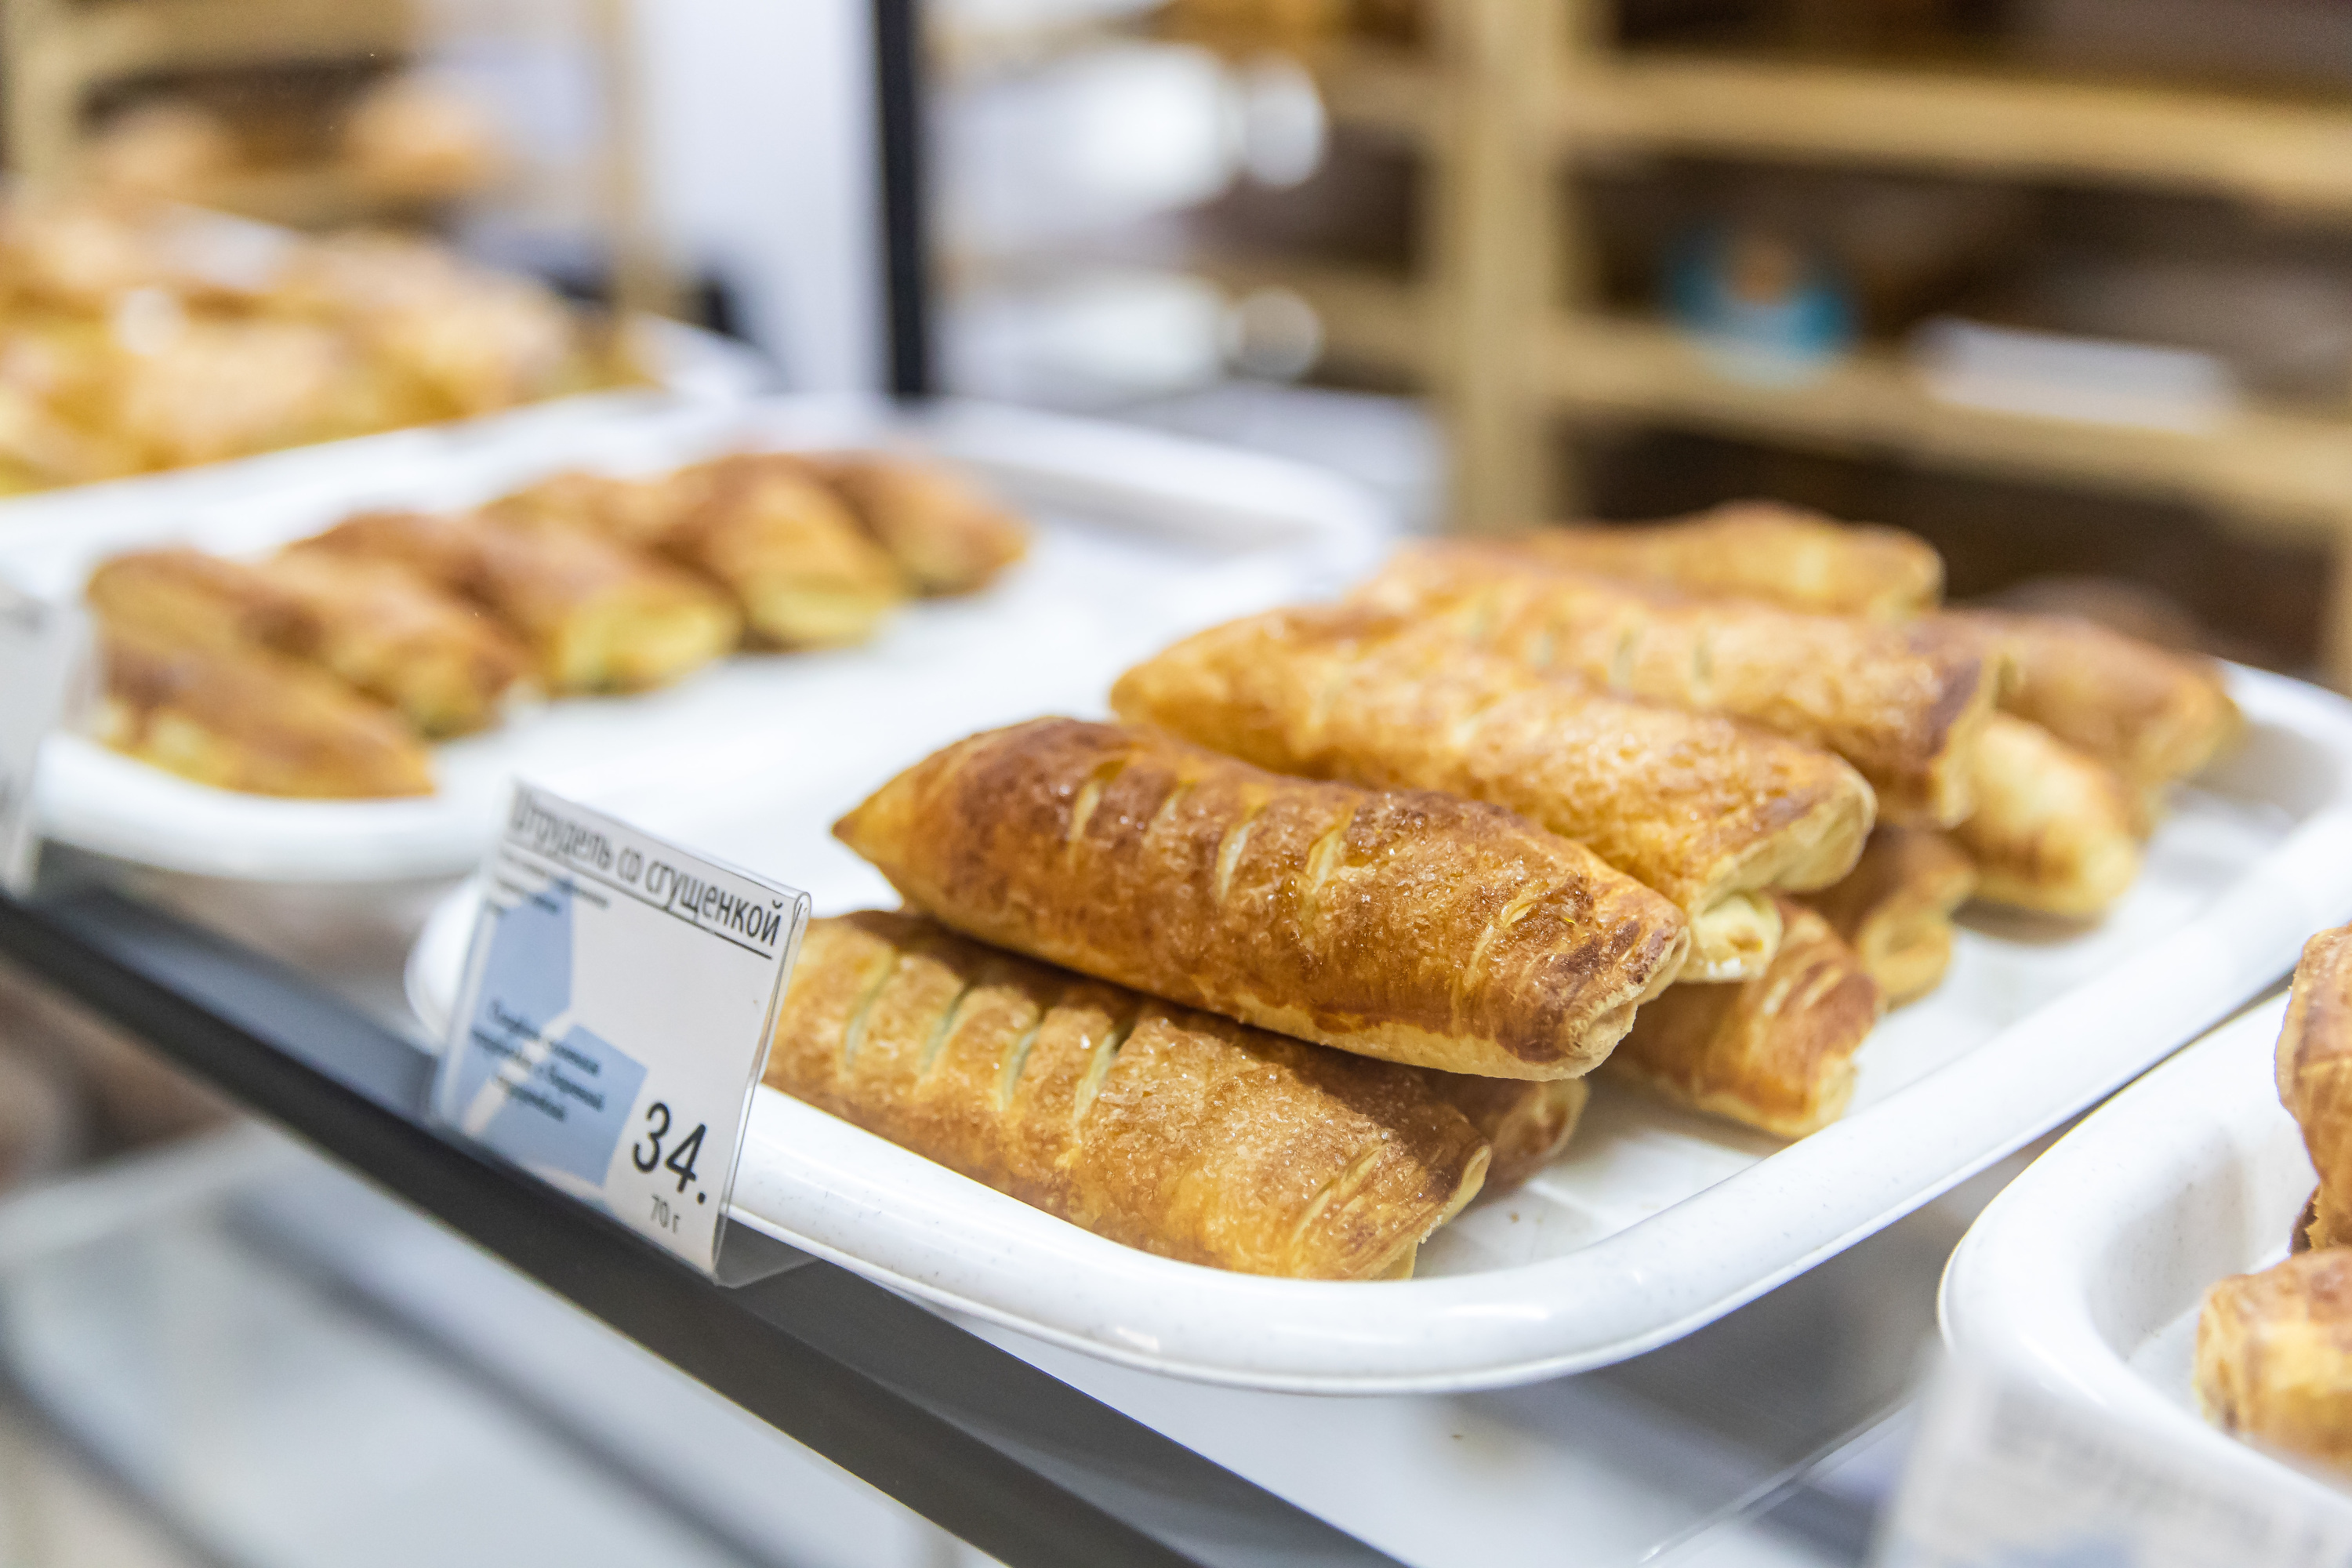 До обеда в пекарне раскупают мелкоштучную выпечку, а к концу дня чаще всего покупают хлеб